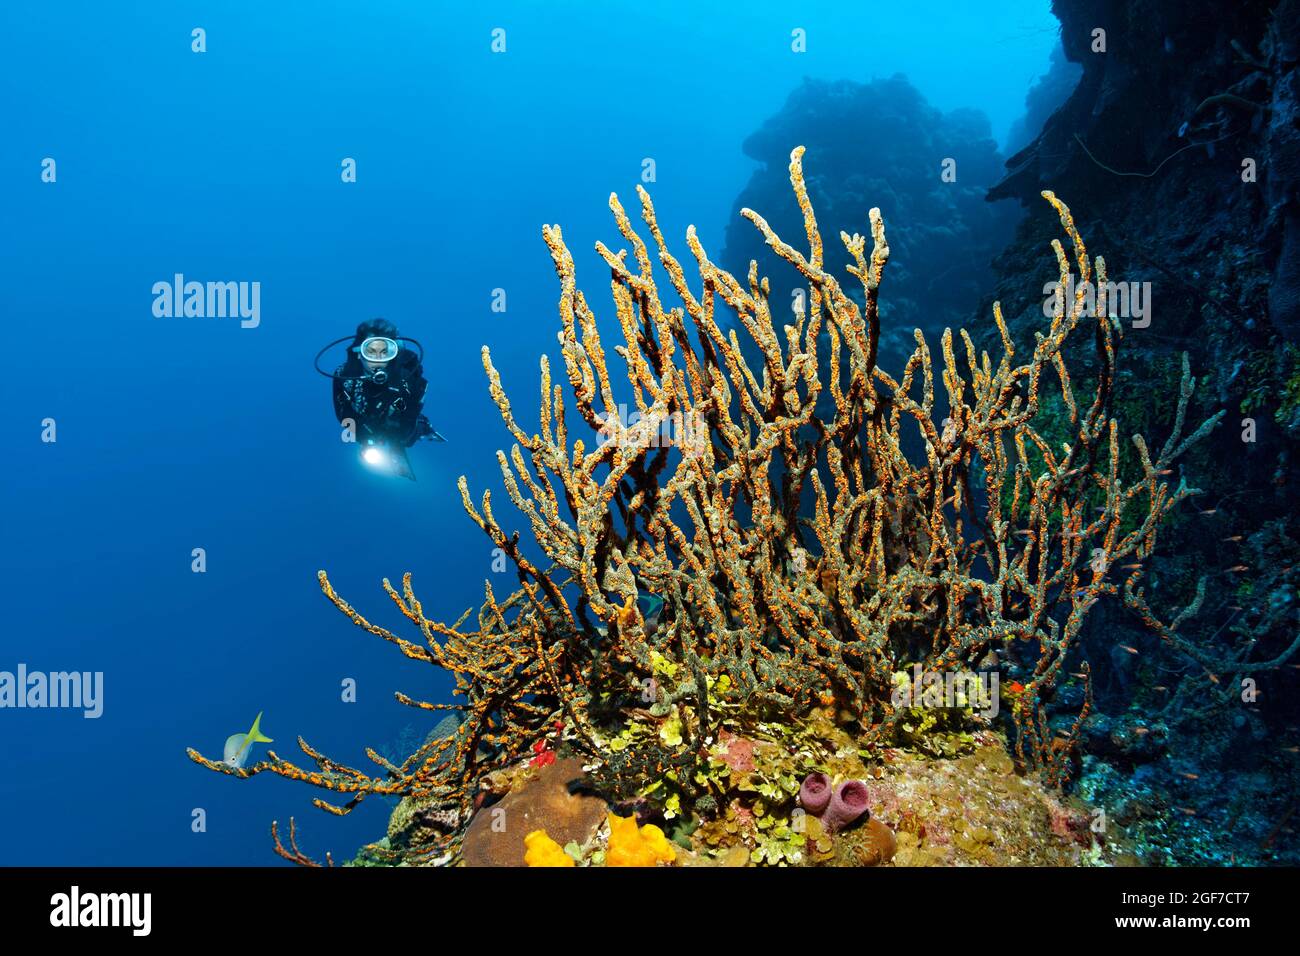 Taucher an der Korallenriffwand mit Blick auf den grünen Fingerschwamm (Lotrochota birotulata) mit Kolonien von goldenem Zoanthid (Parazoanthus swiftii), Karibik Stockfoto